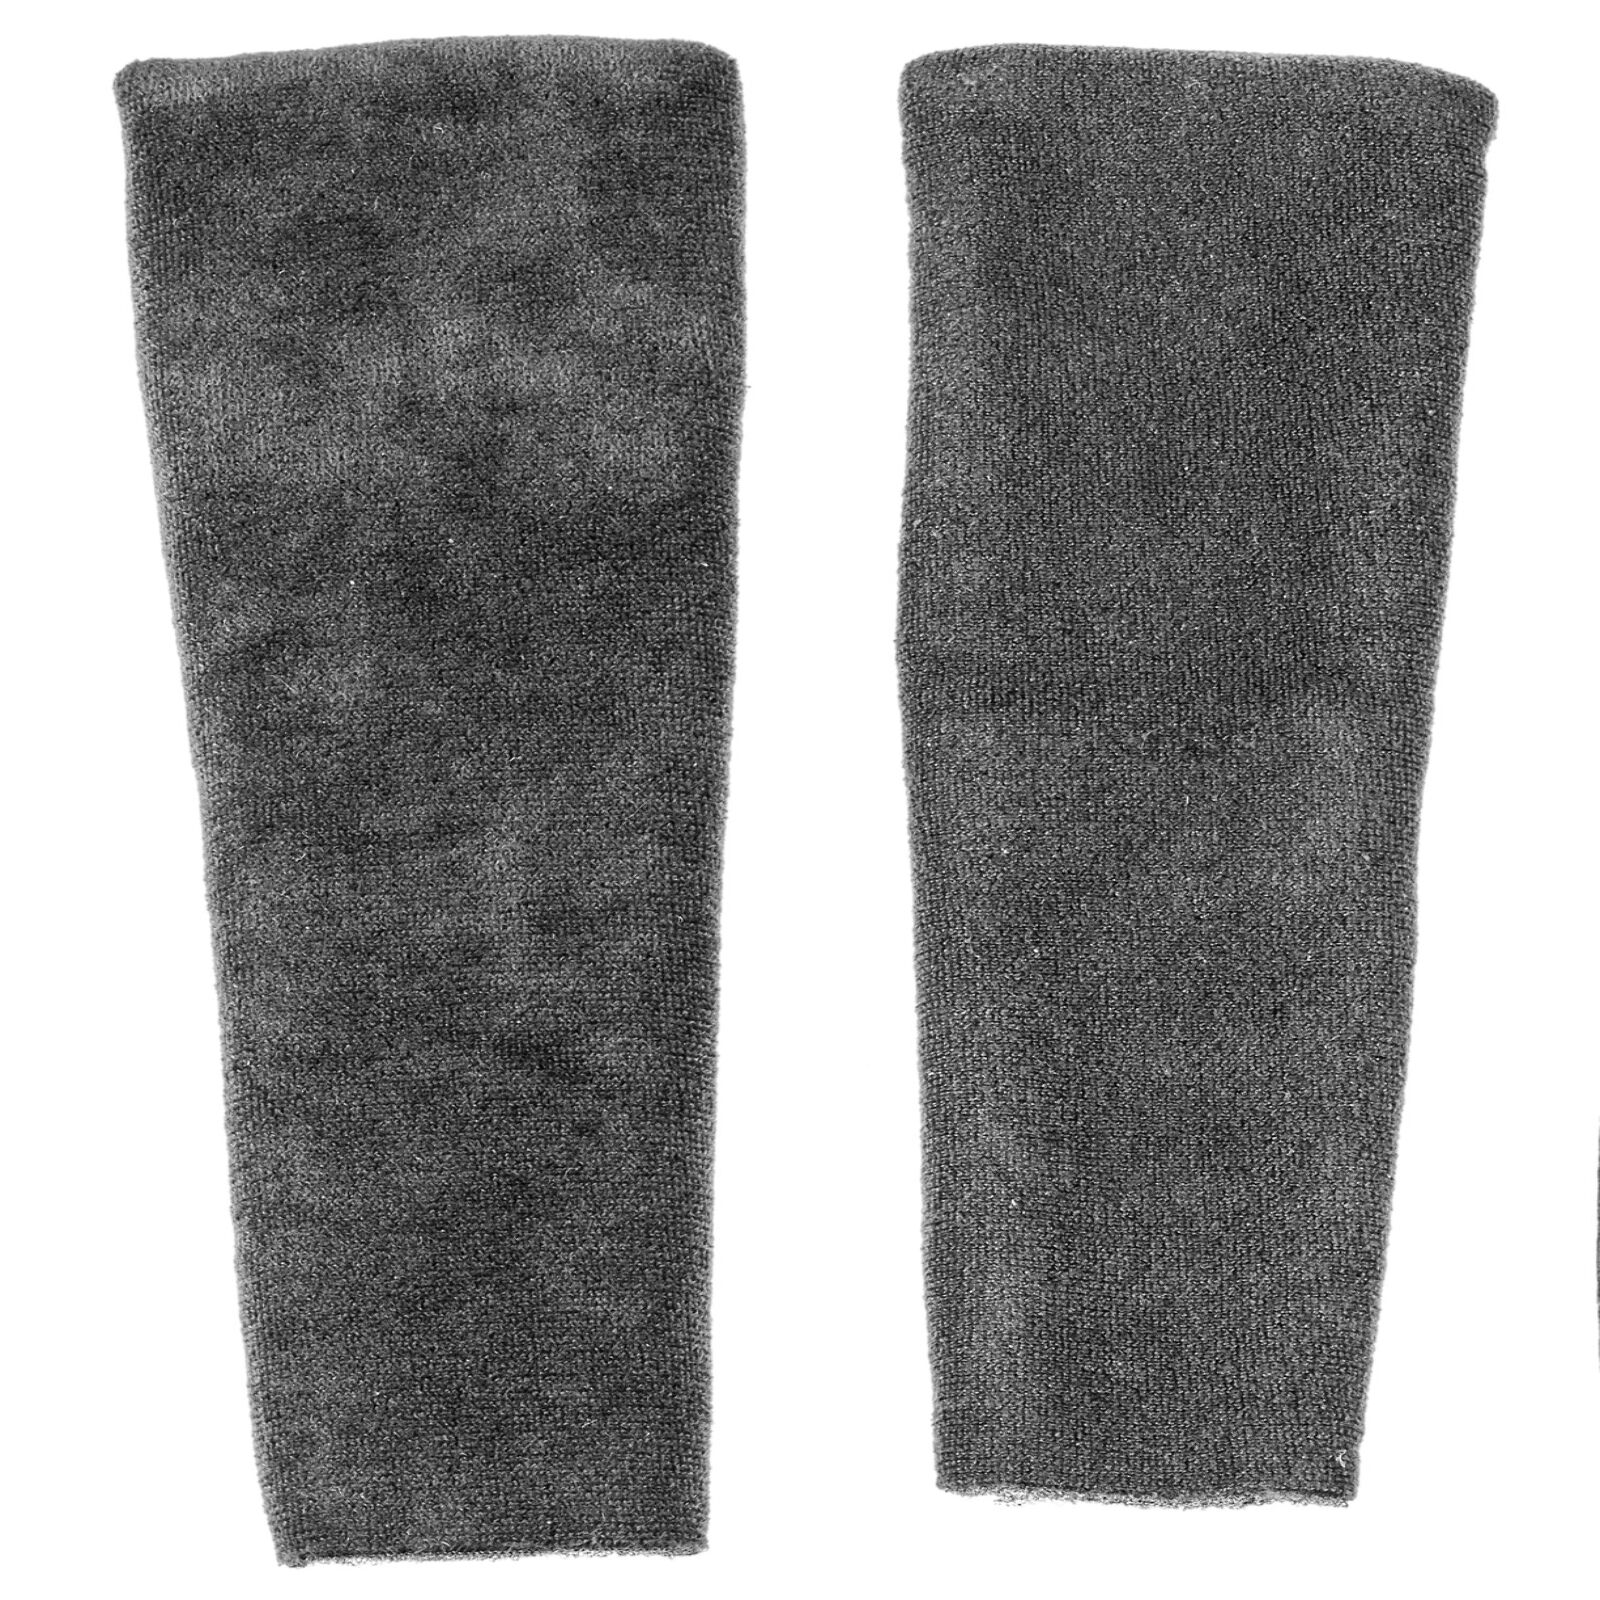 Obrázek produktu kryt řemínku zapínání pro přilby AVIATOR 2.2/2.3, AIROH (černý. vel. L) 11B23L